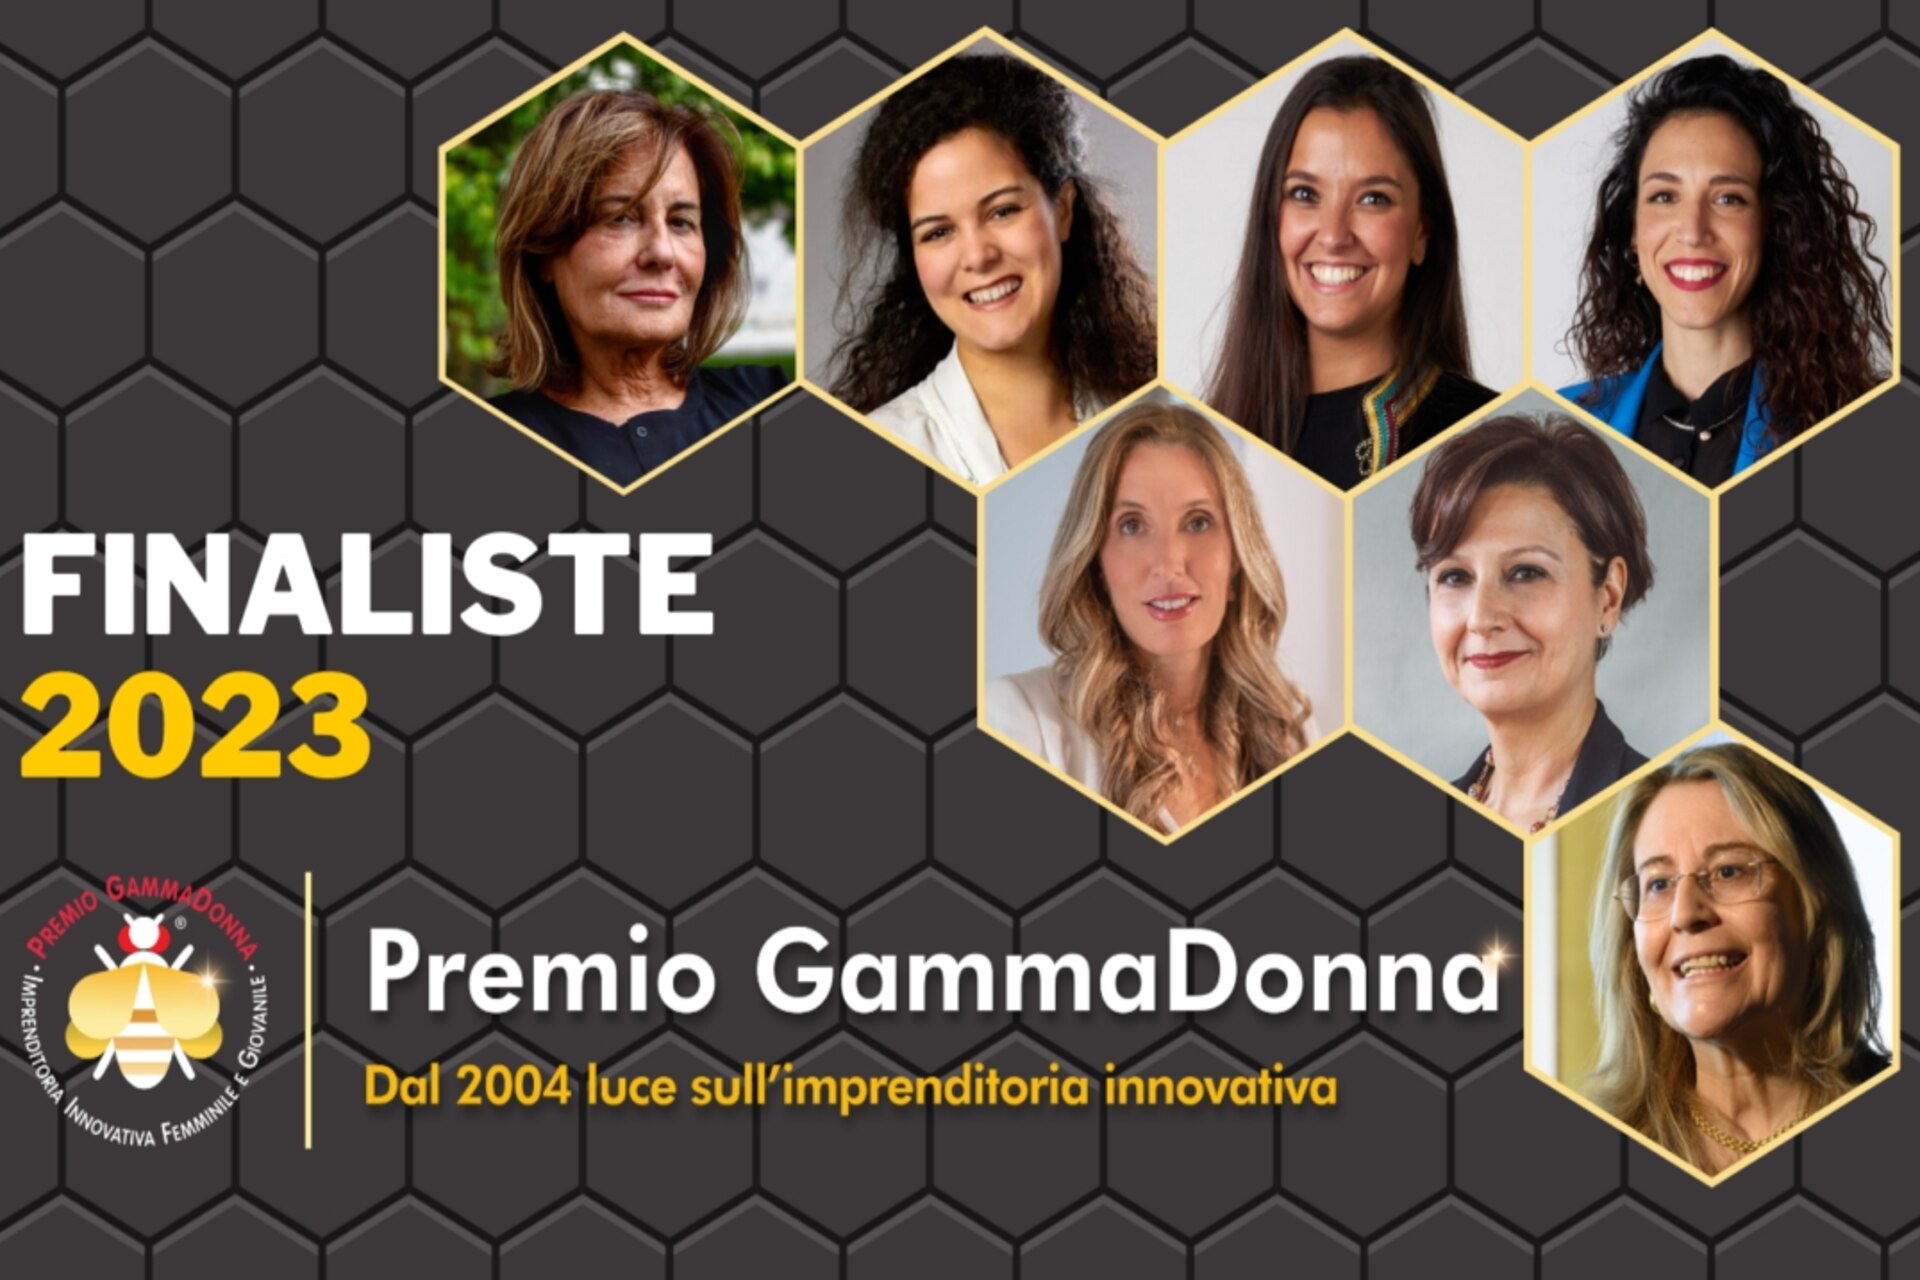 Premio GammaDonna: le finaliste 2023